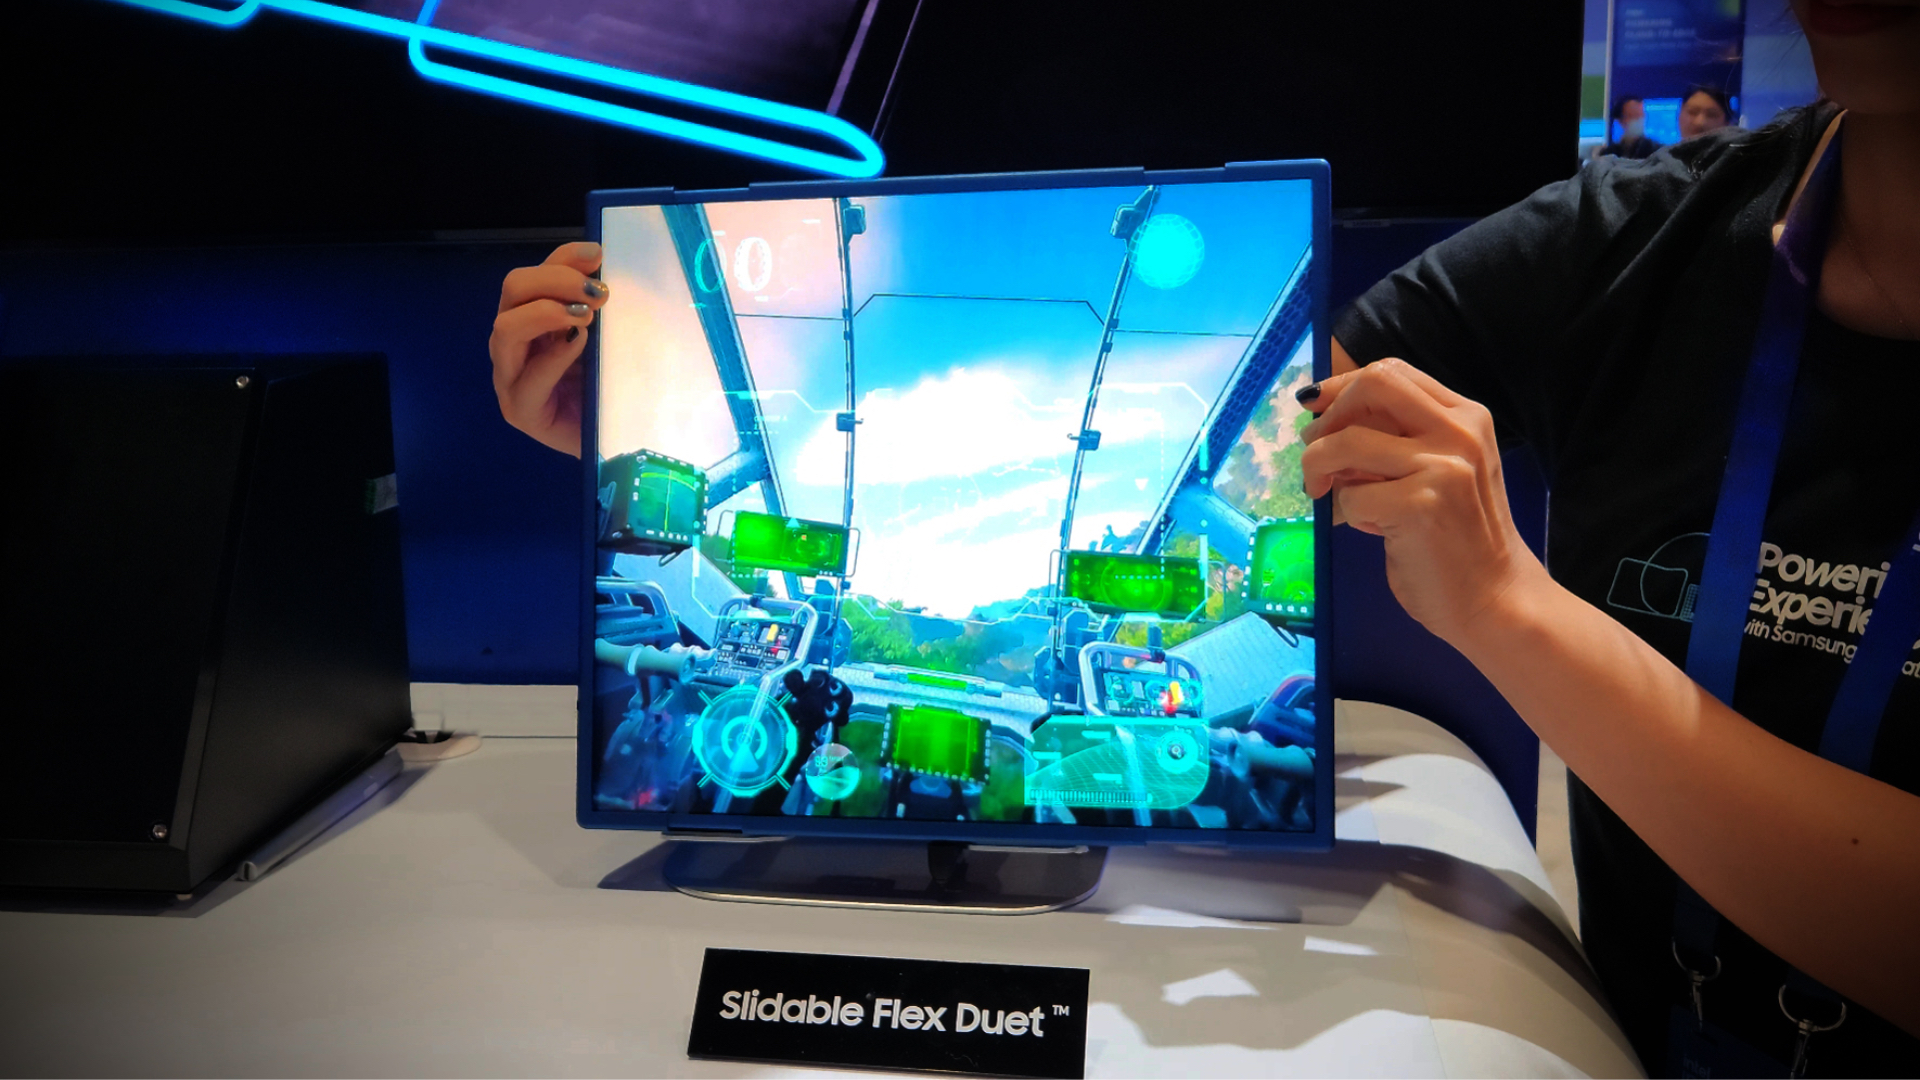 Samsung Sliding Flex Duet OLED-scherm